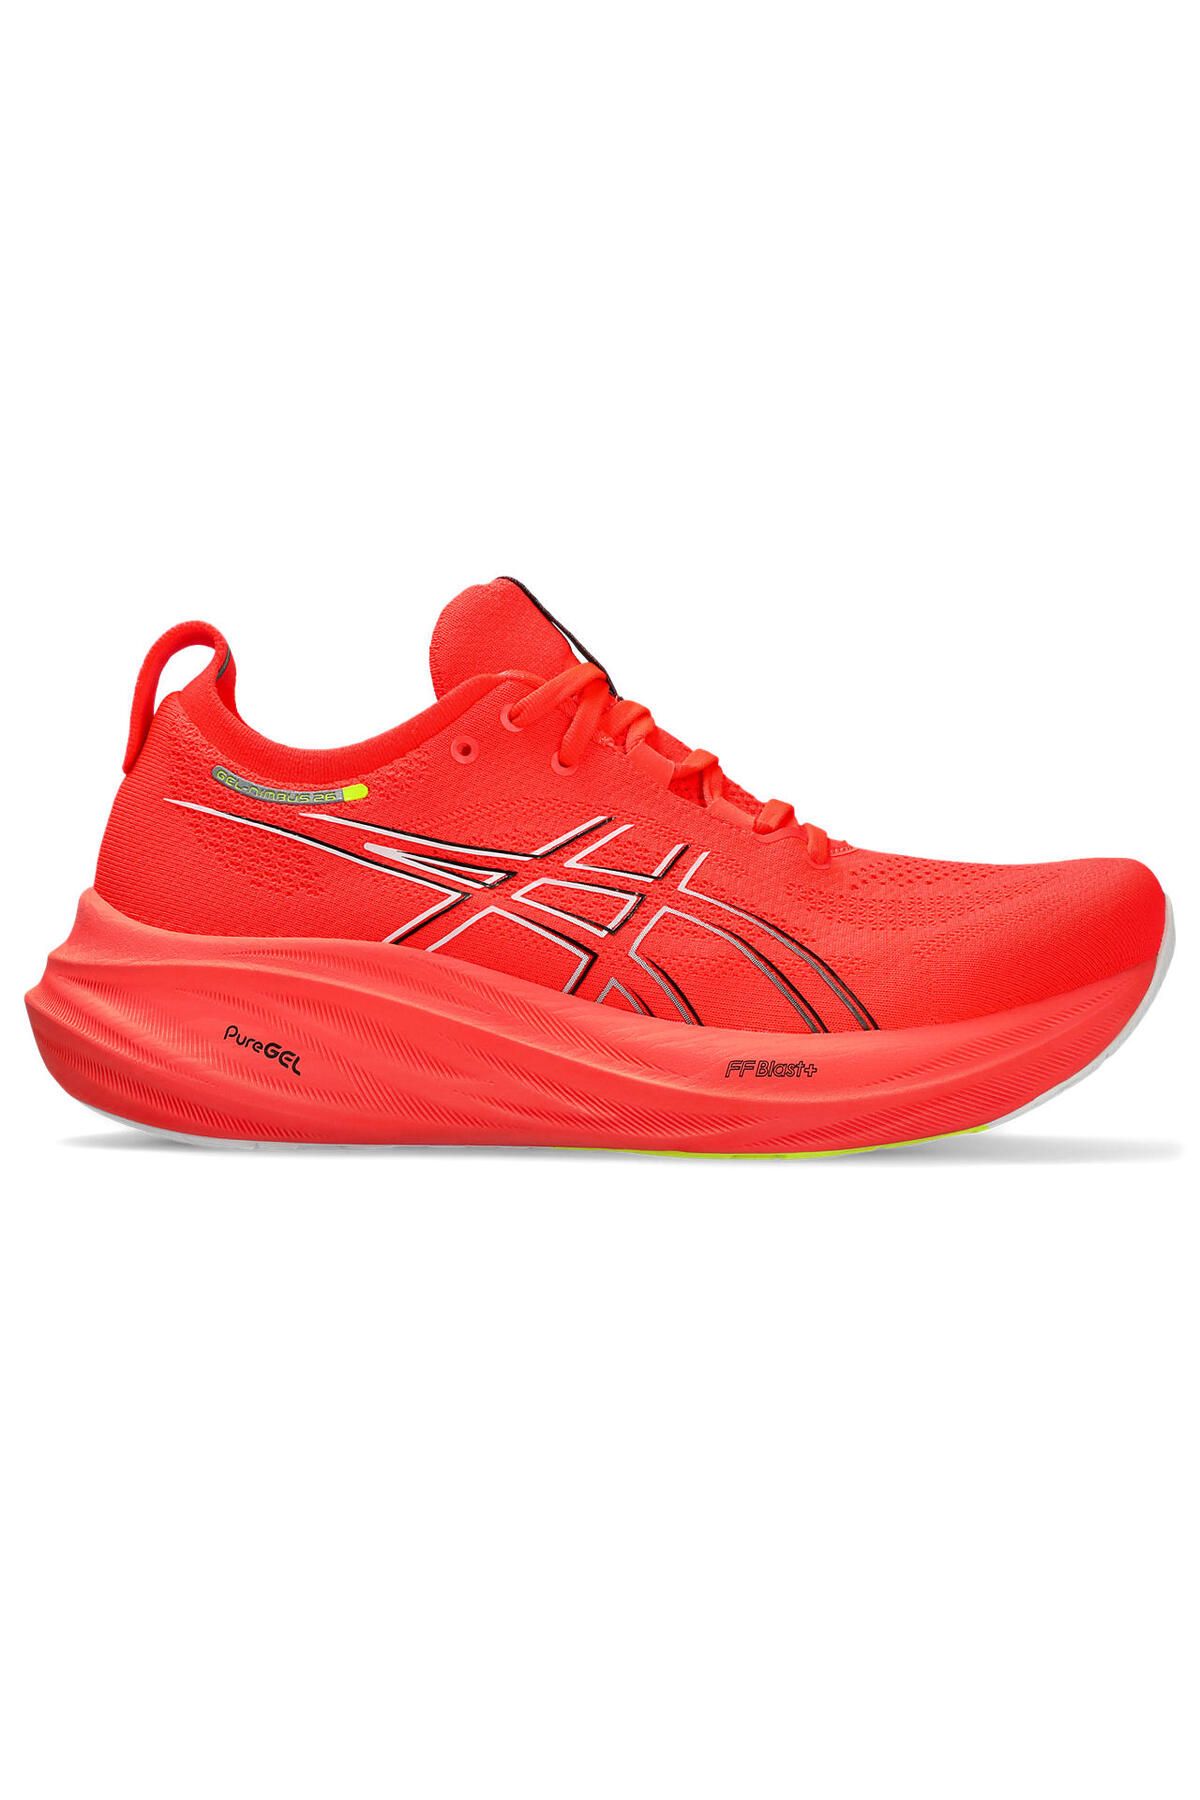 Asics Gel-Nimbus 26 Erkek Kırmızı Koşu Ayakkabısı 1011B794-600